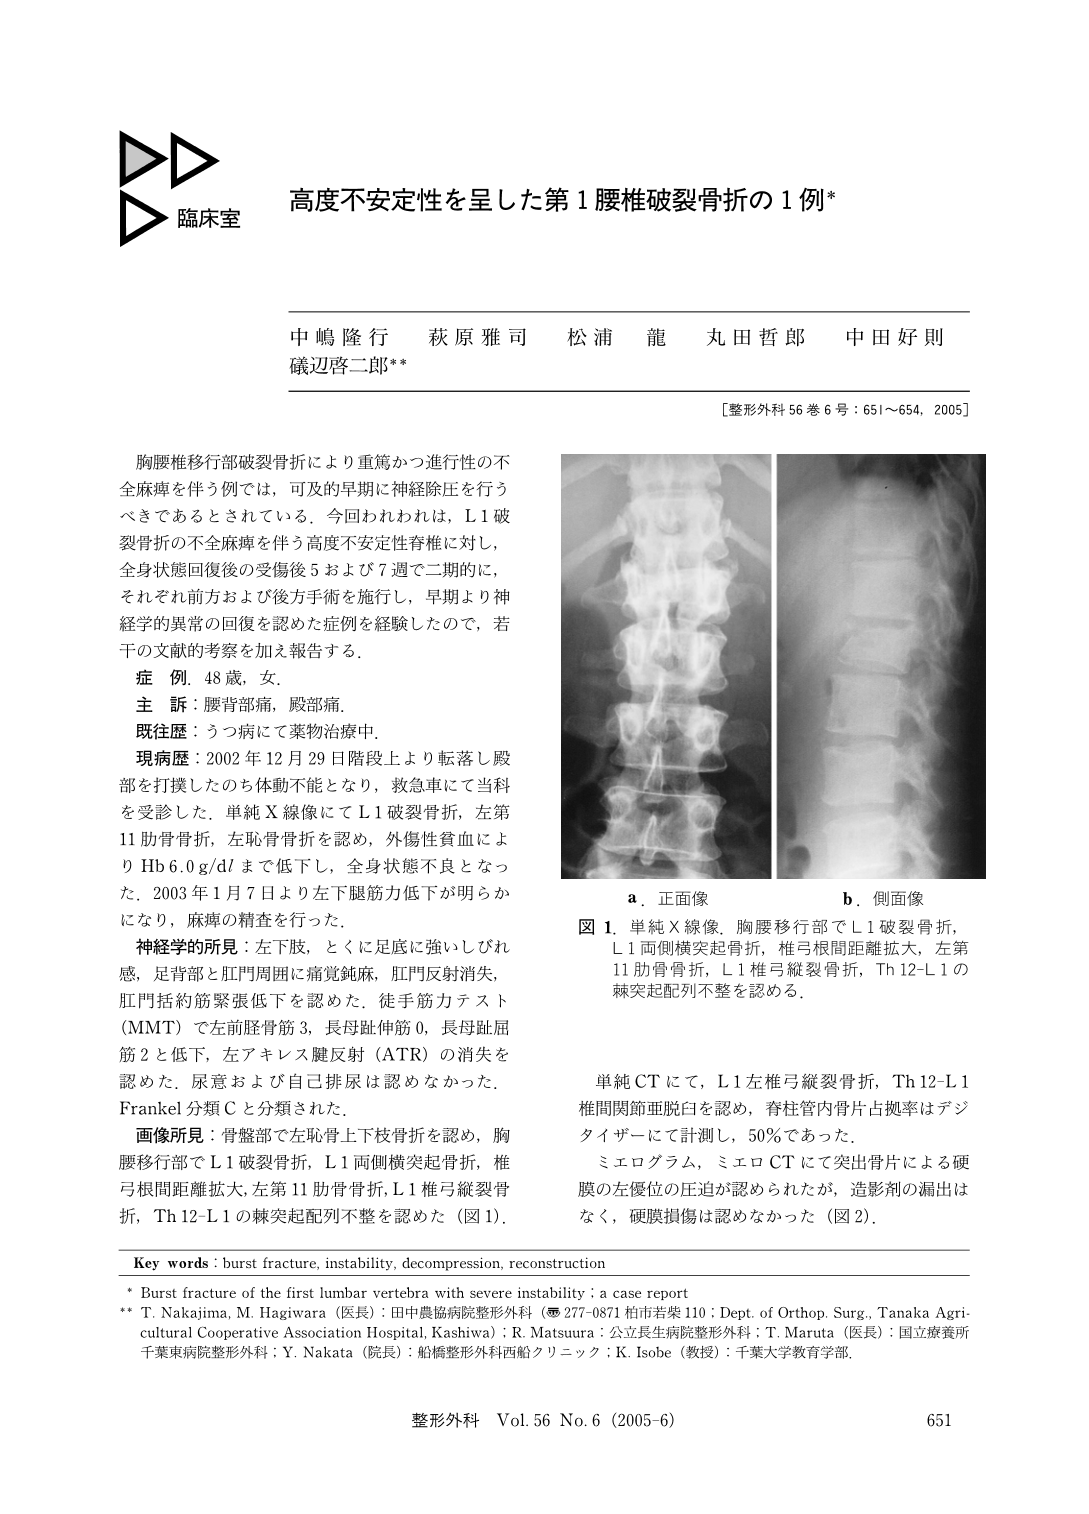 高度不安定性を呈した第1腰椎破裂骨折の1例 臨床雑誌整形外科 56巻6号 医書 Jp